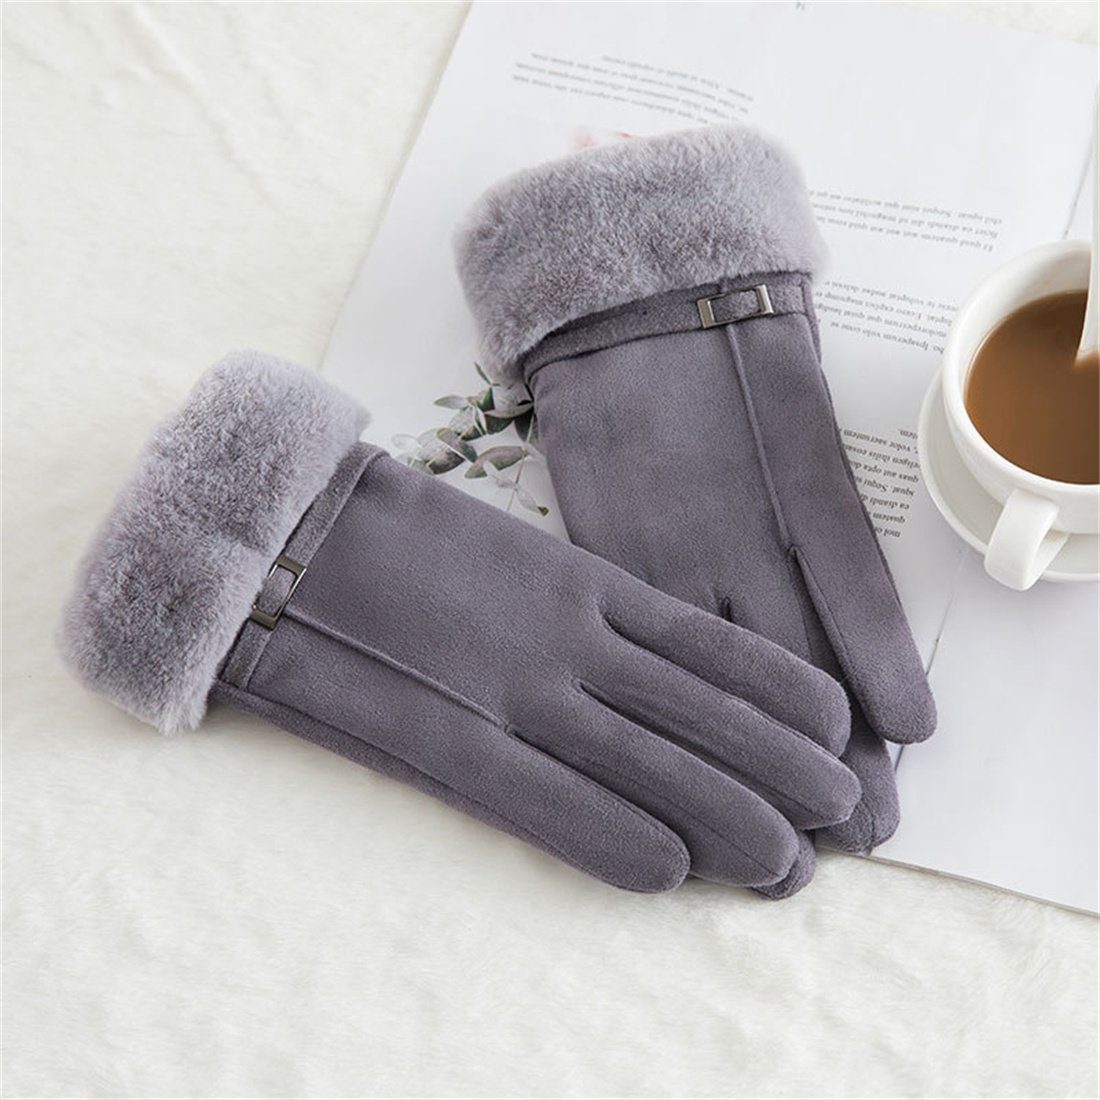 DÖRÖY Fleecehandschuhe Damen-Reithandschuhe mitTouchscreen,gepolsterte warme Grau Winterhandschuhe